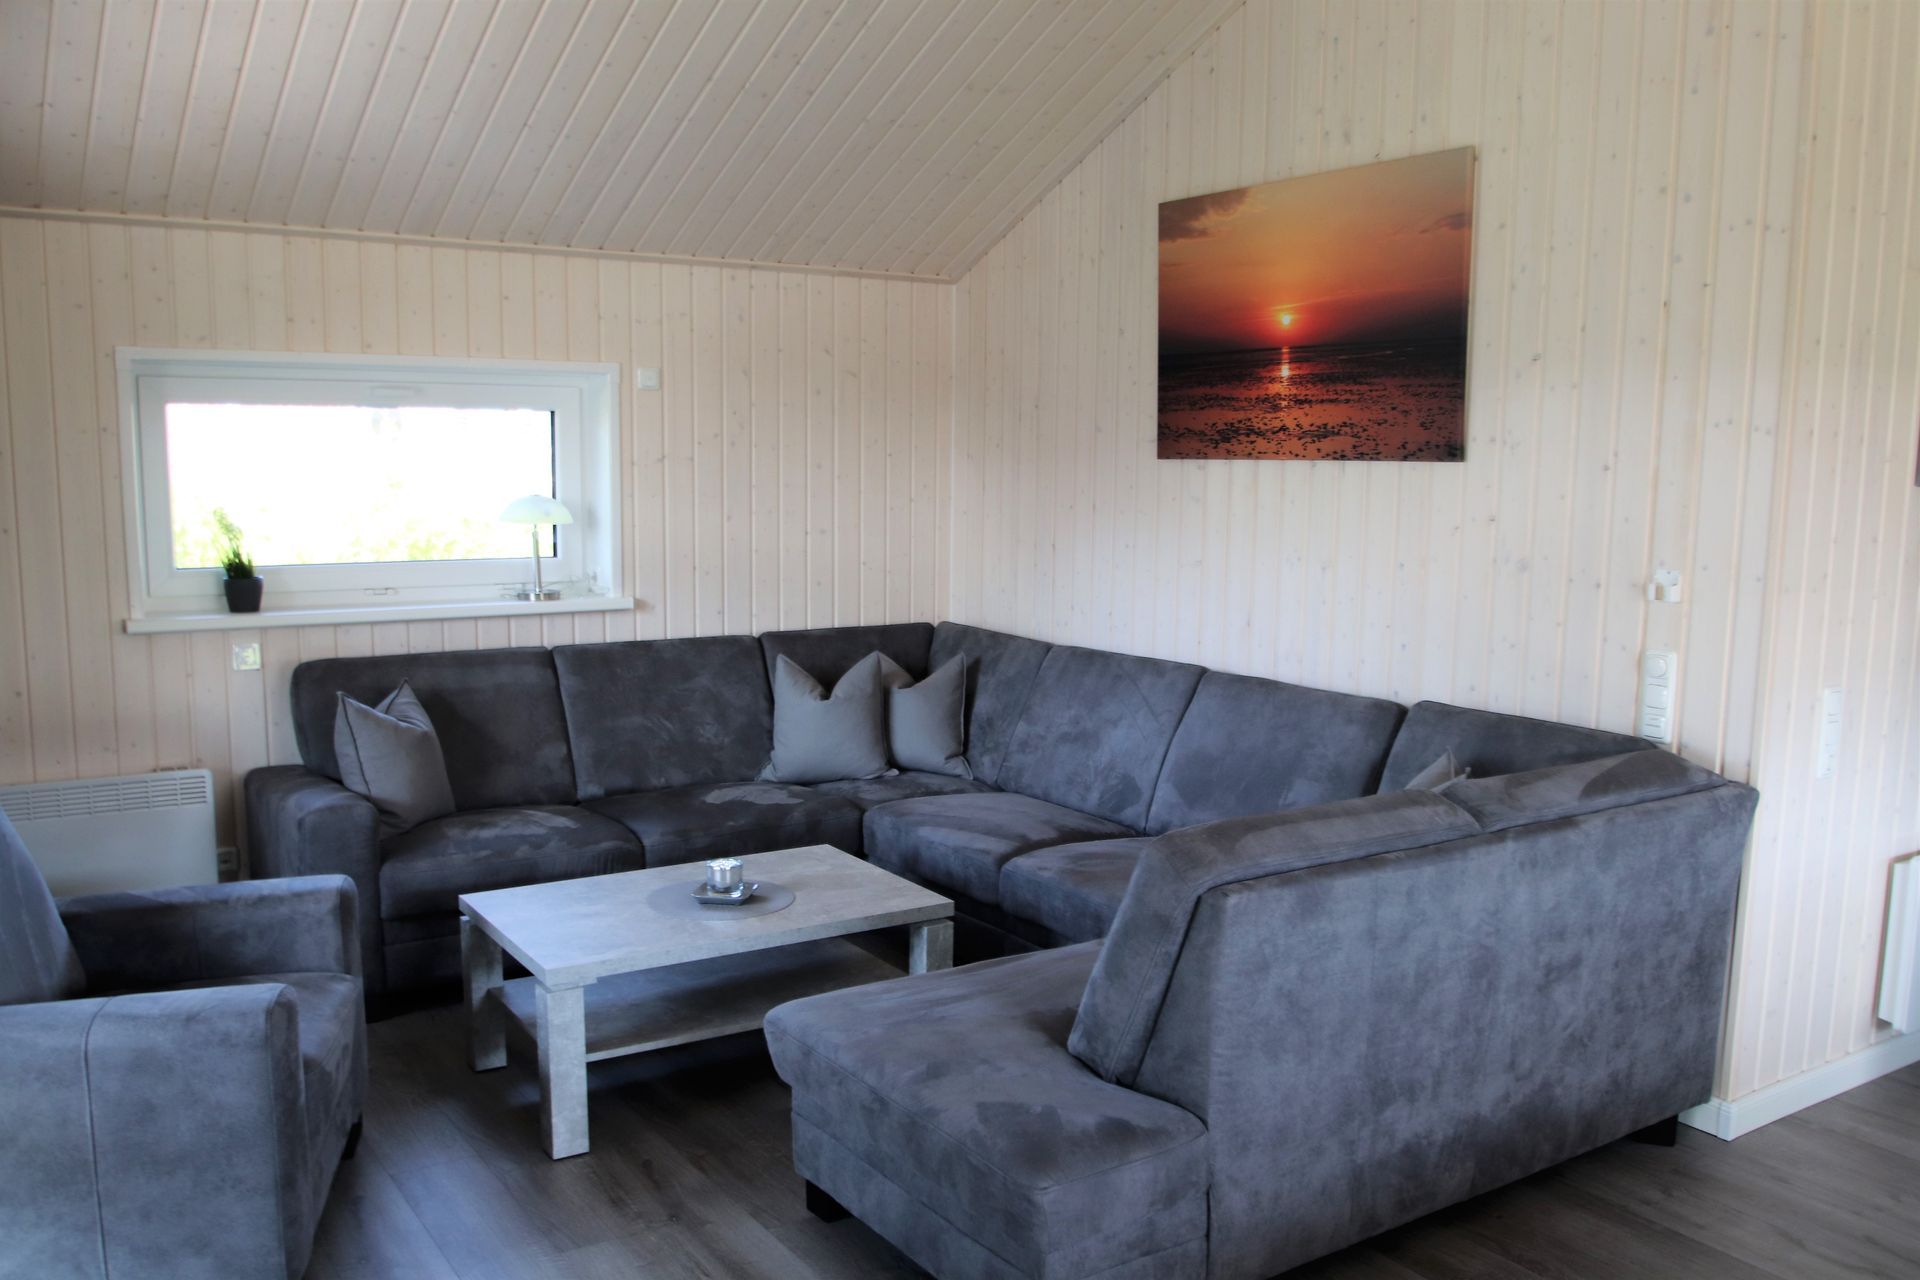 Couchgarnitur im Wohnraum Ferienhaus barrierefrei Anwaß 16a 25718 Friedrichskoog Nordsee